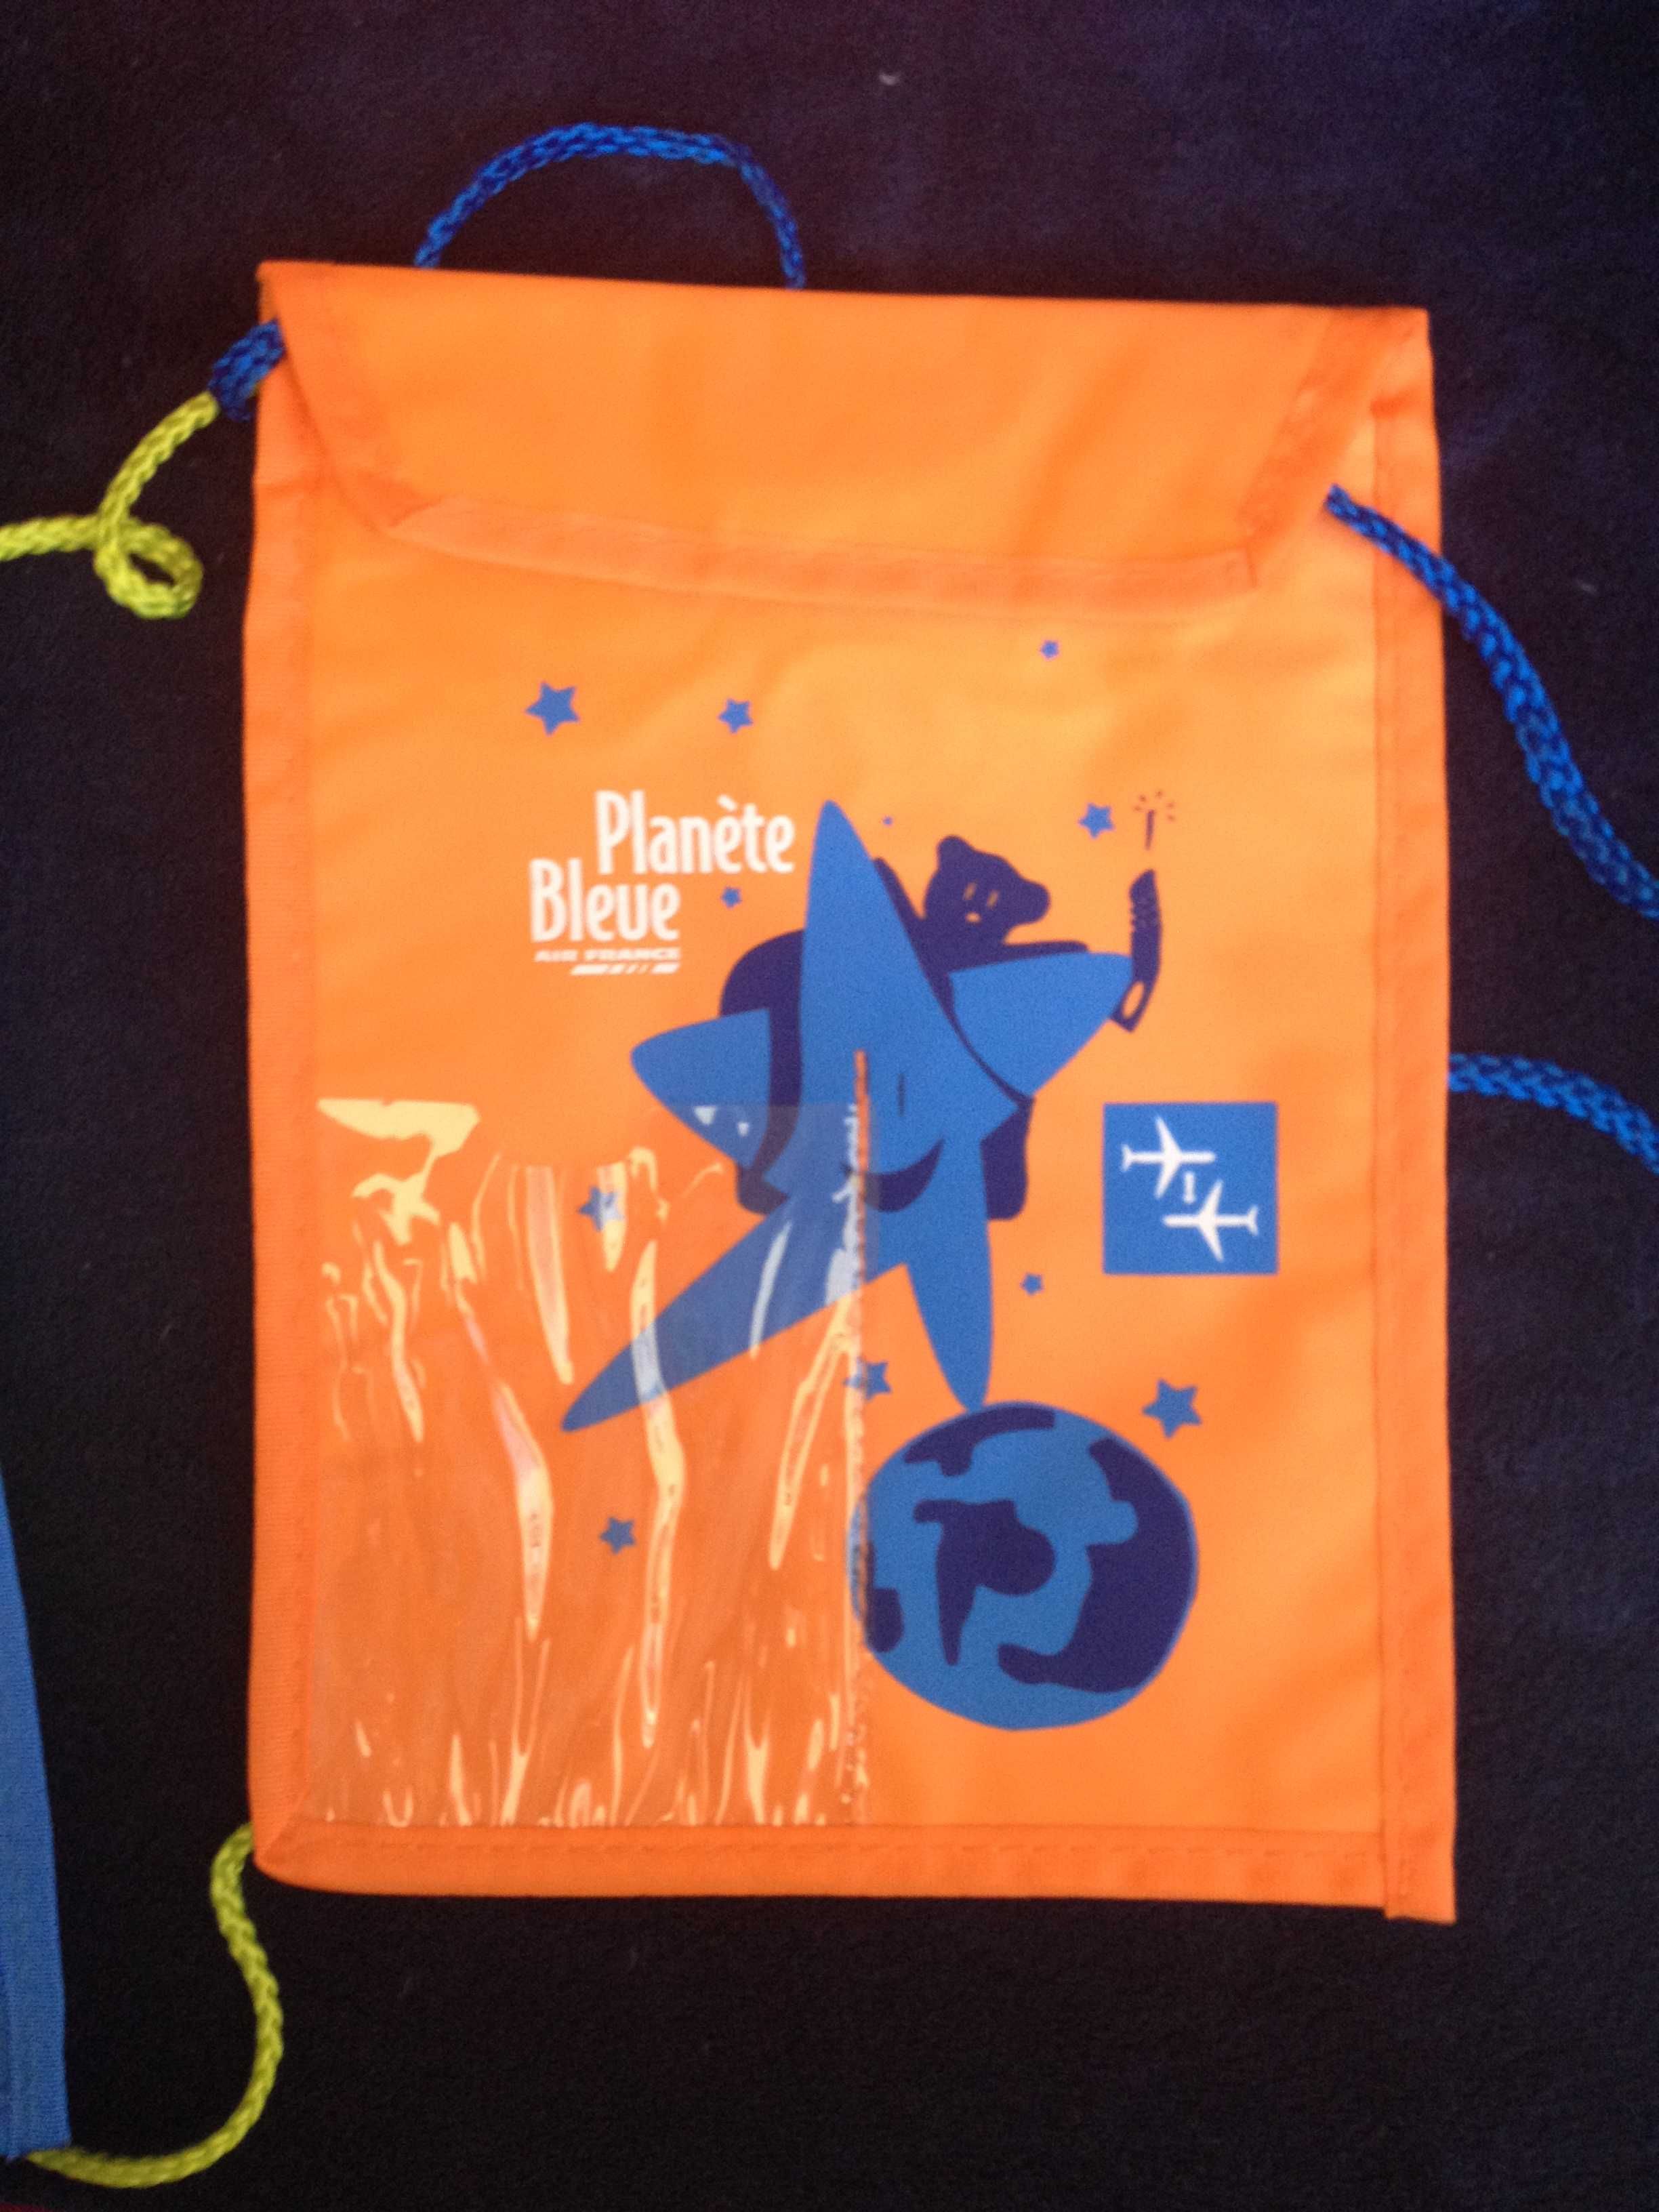 Торбички портмонета за деца Planete Bleue 23 х 17 см. оранжеви, сини